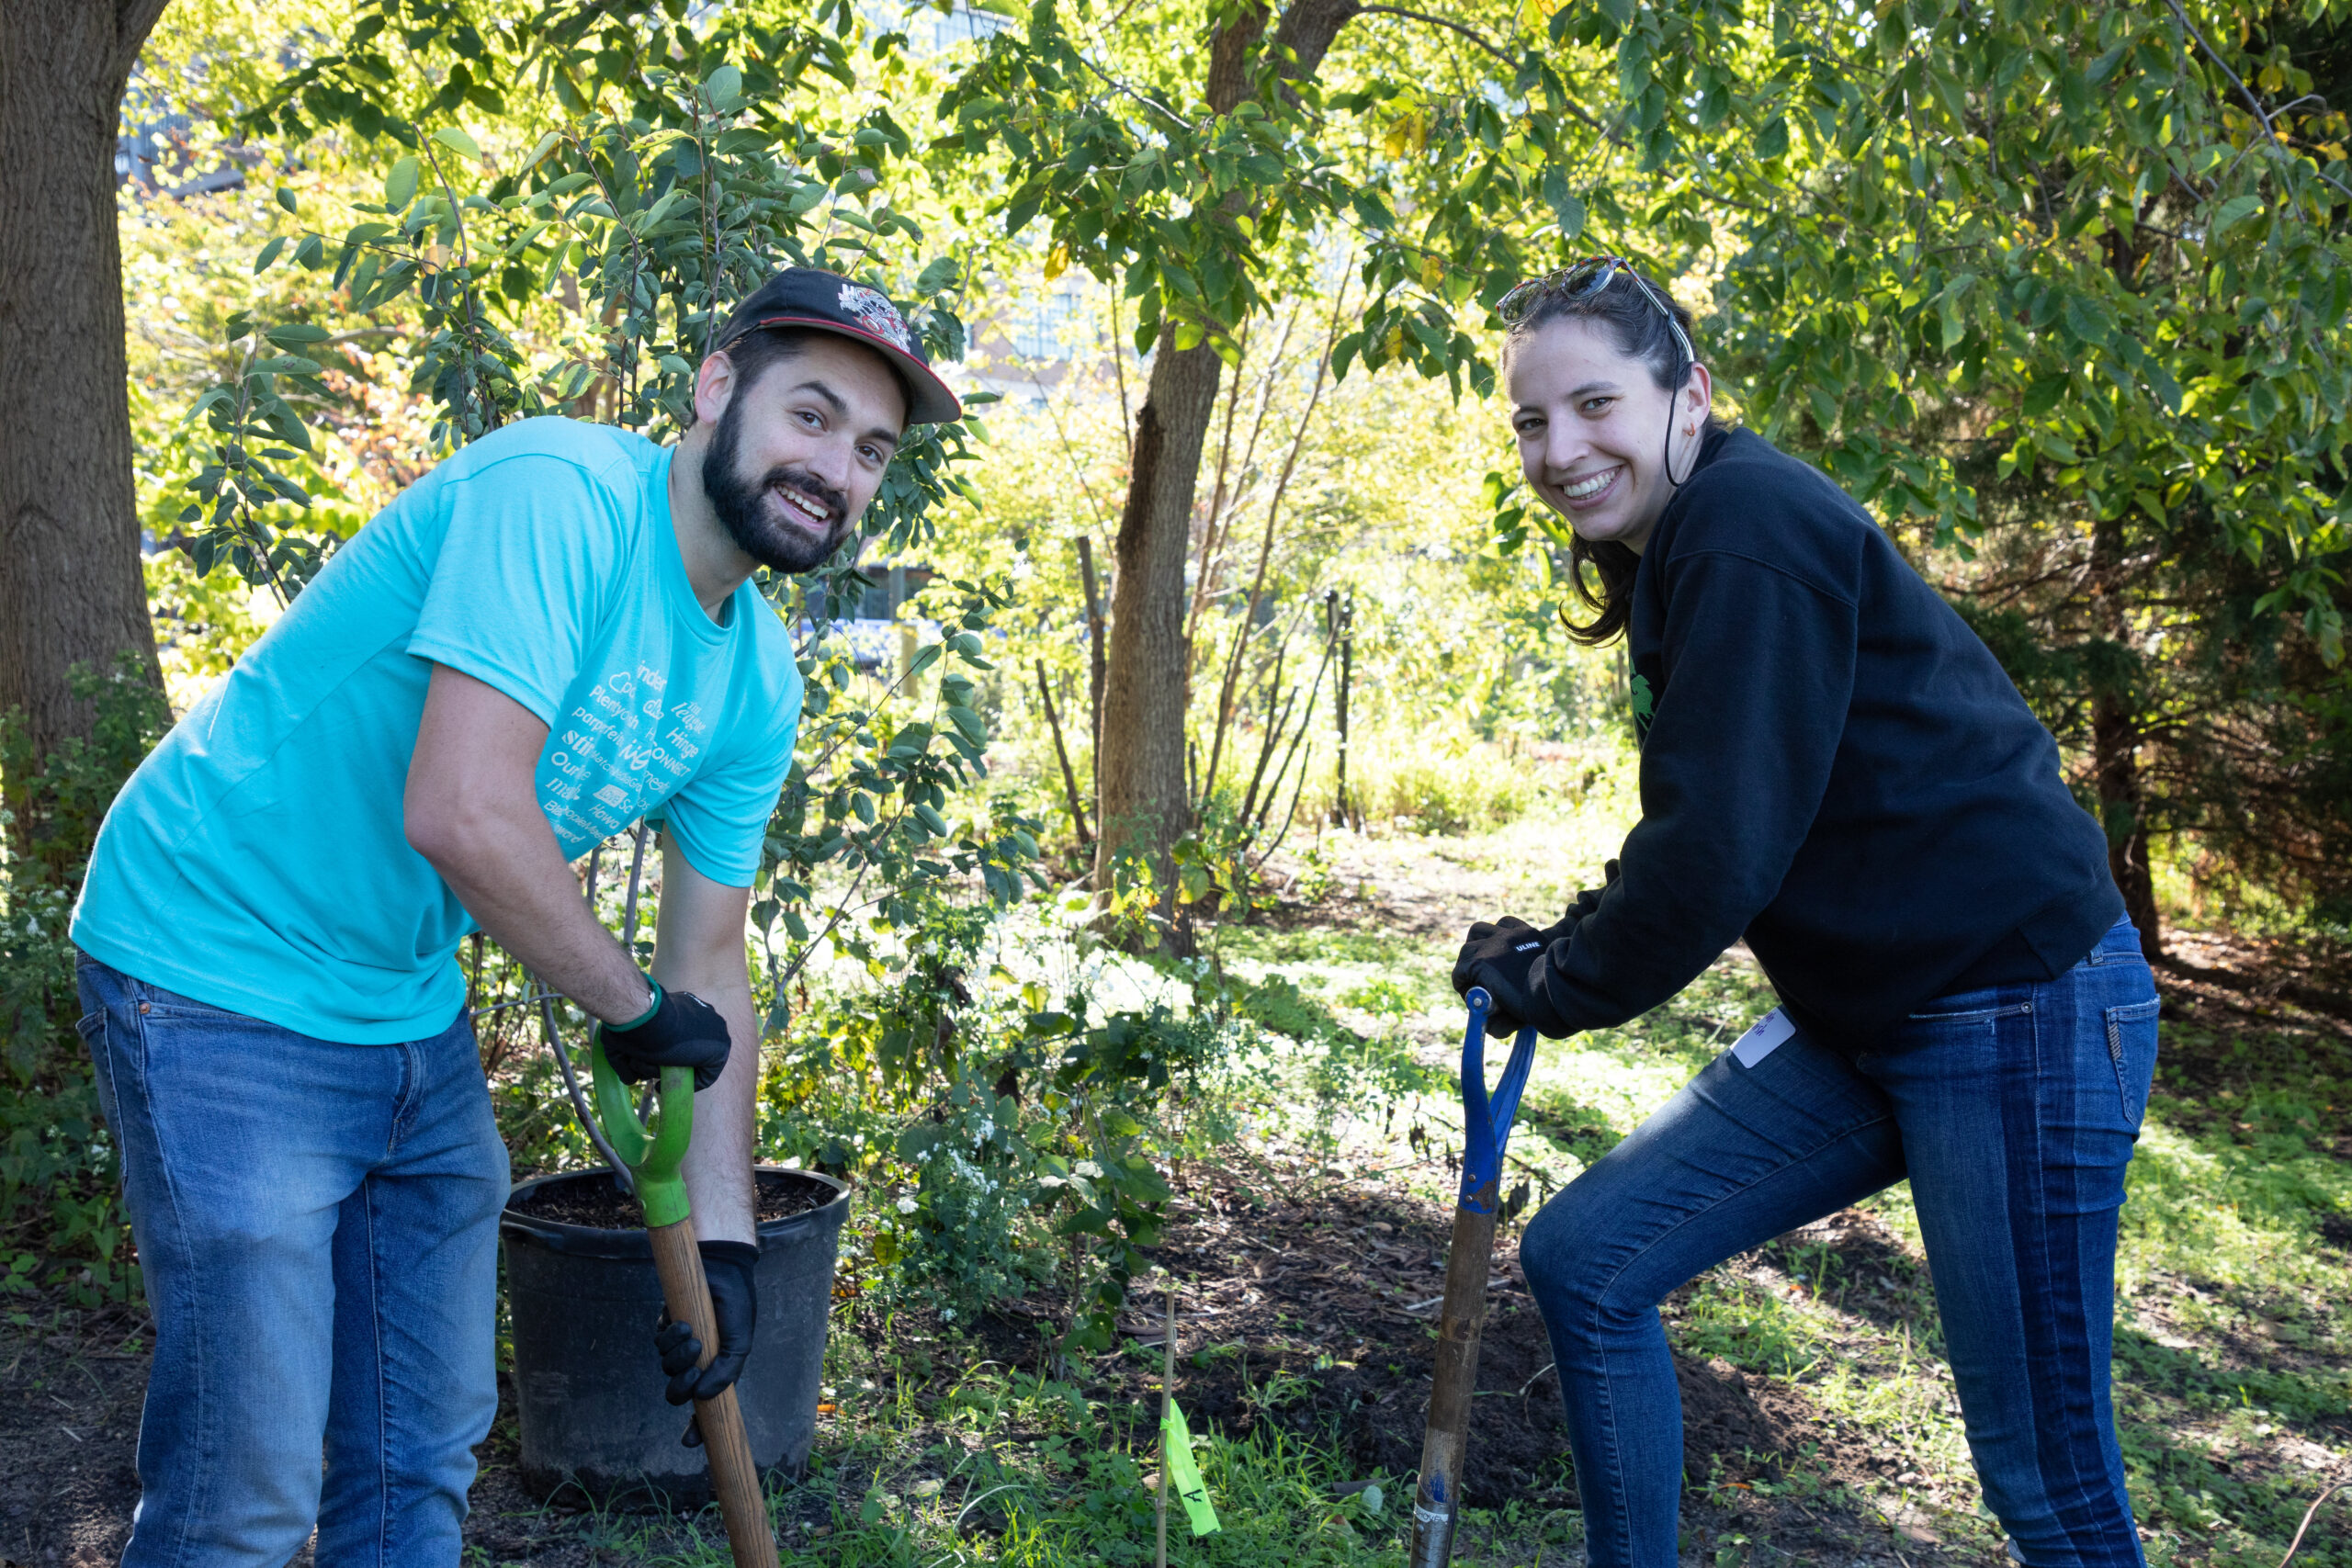 Volunteers planting trees in Hudson River Park